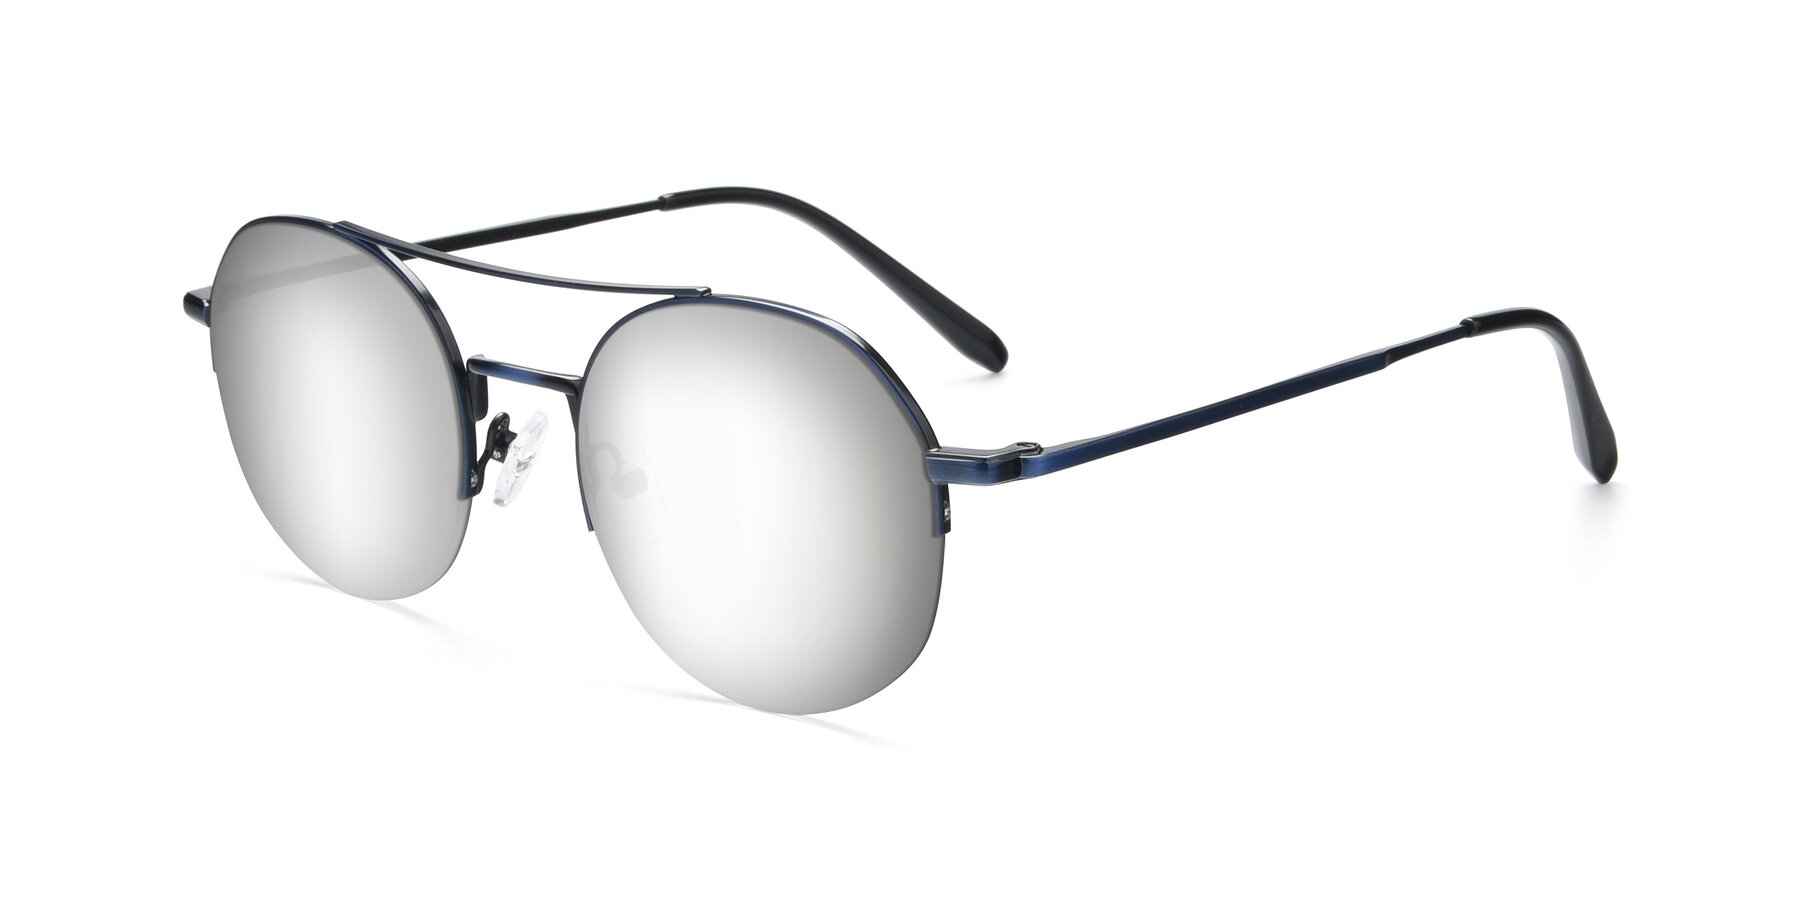 Blue Double Bridge Round Semi-Rimless Mirrored Sunglasses with Silver ...